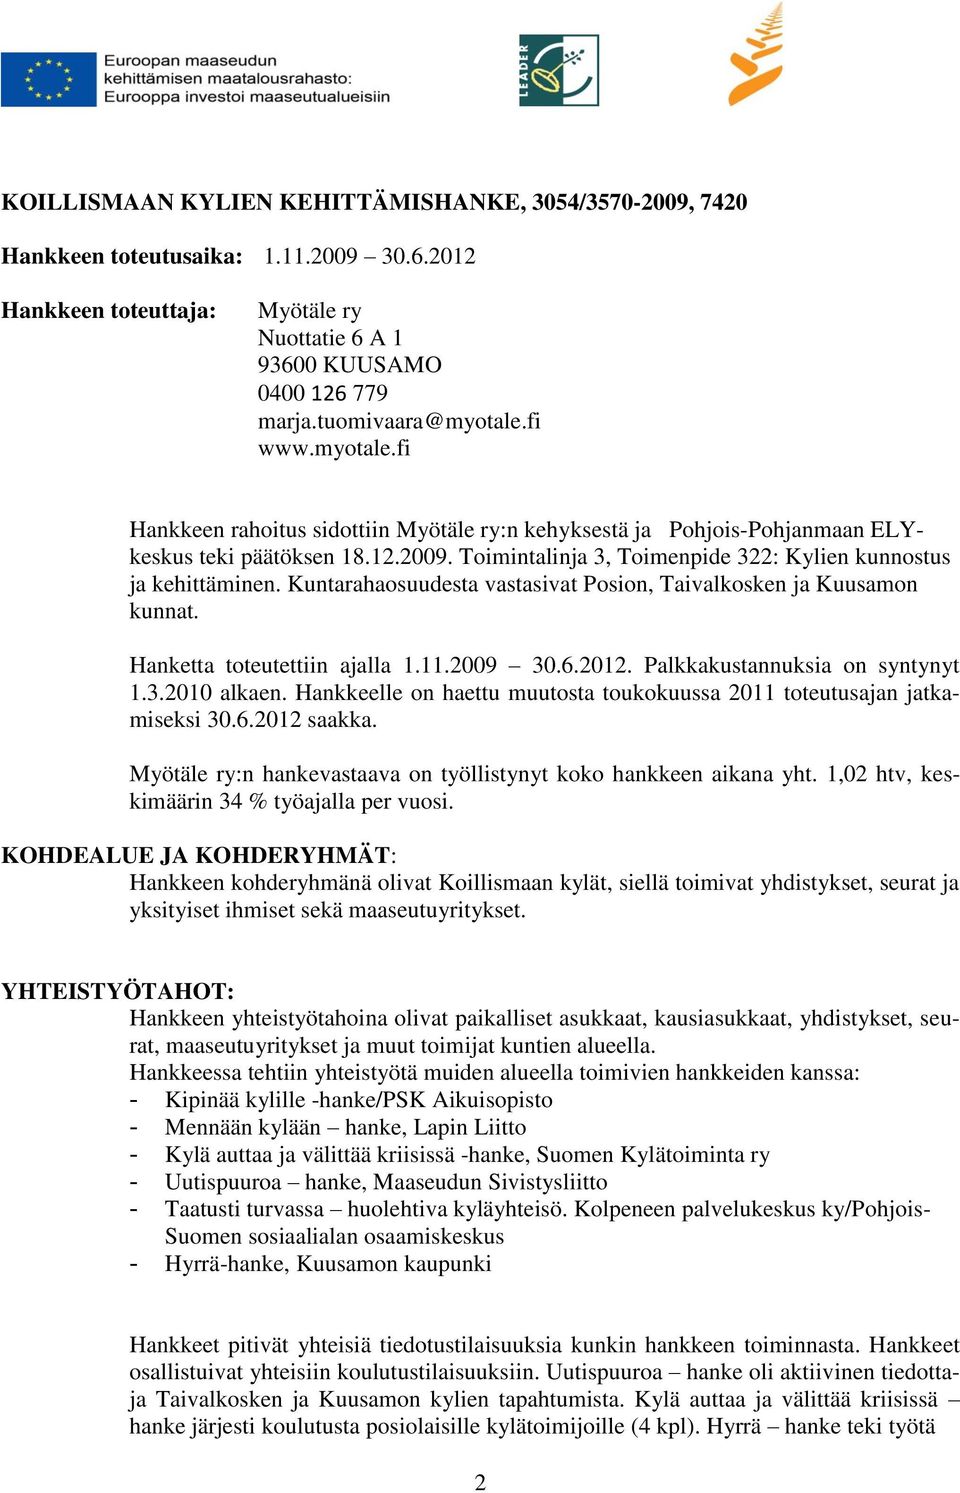 Kuntarahaosuudesta vastasivat Posion, Taivalkosken ja Kuusamon kunnat. Hanketta toteutettiin ajalla 1.11.2009 30.6.2012. Palkkakustannuksia on syntynyt 1.3.2010 alkaen.